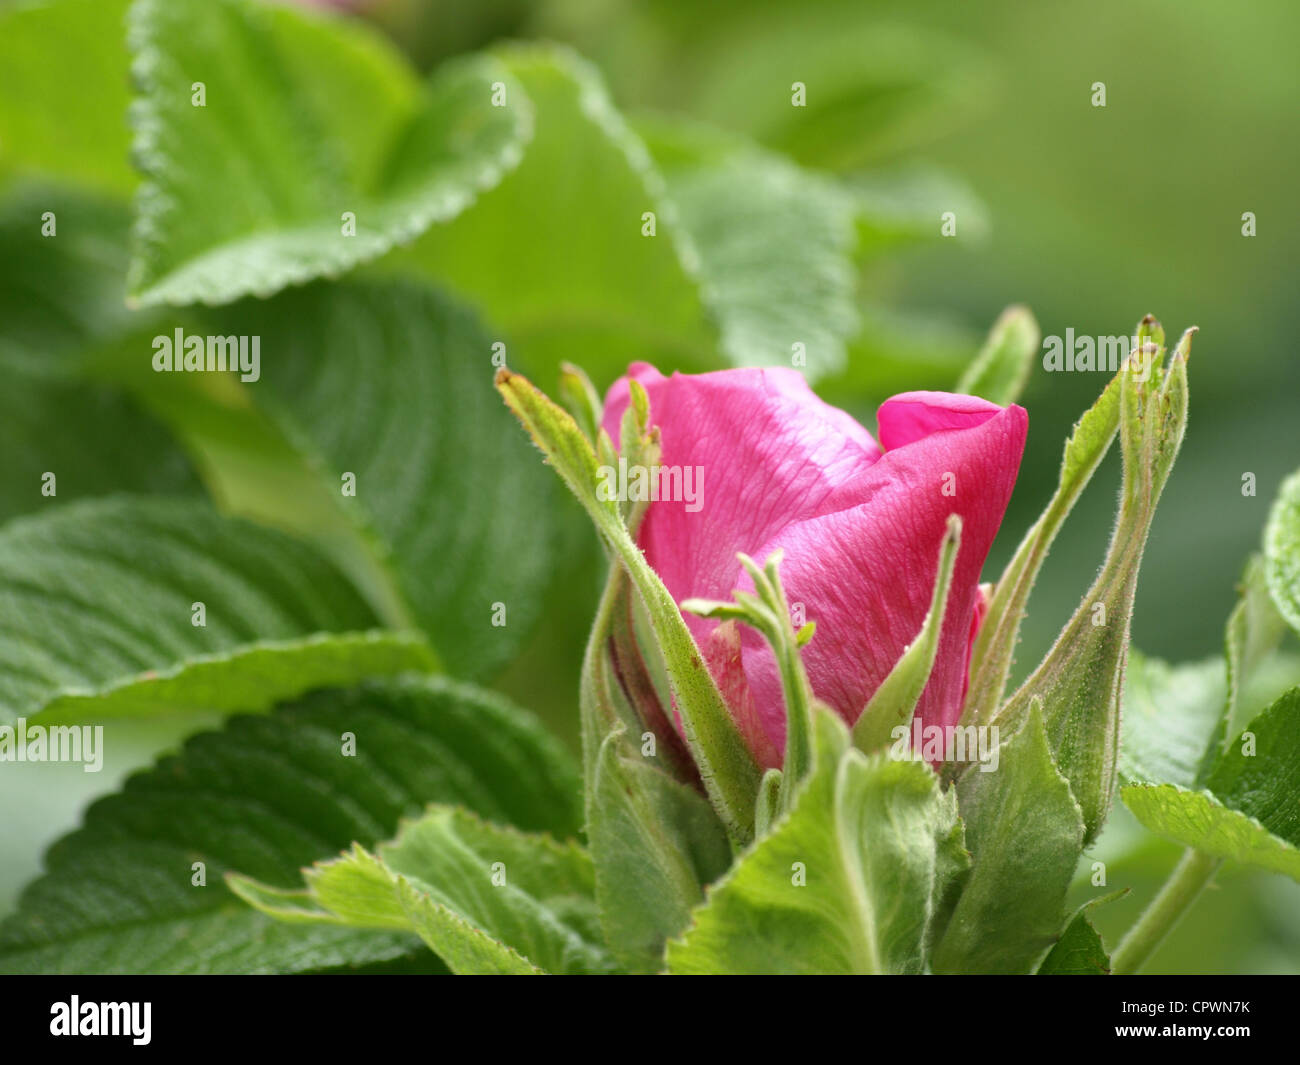 Bloom from Dog Rose / Dogrose / Rosa canina / Heckenrose / Hundsrose Stock Photo